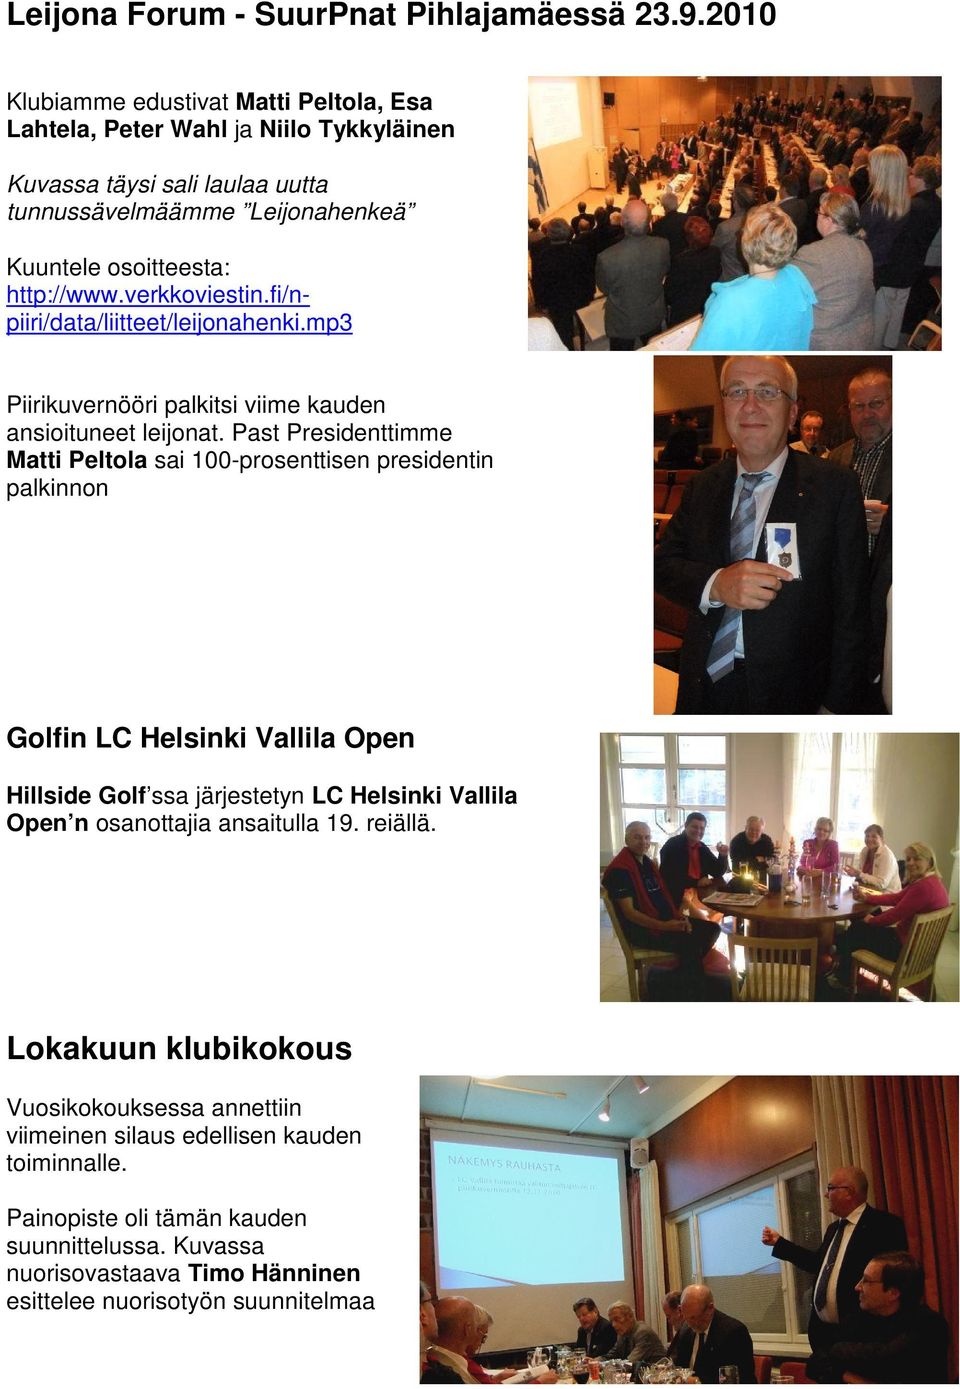 verkkoviestin.fi/npiiri/data/liitteet/leijonahenki.mp3 Piirikuvernööri palkitsi viime kauden ansioituneet leijonat.